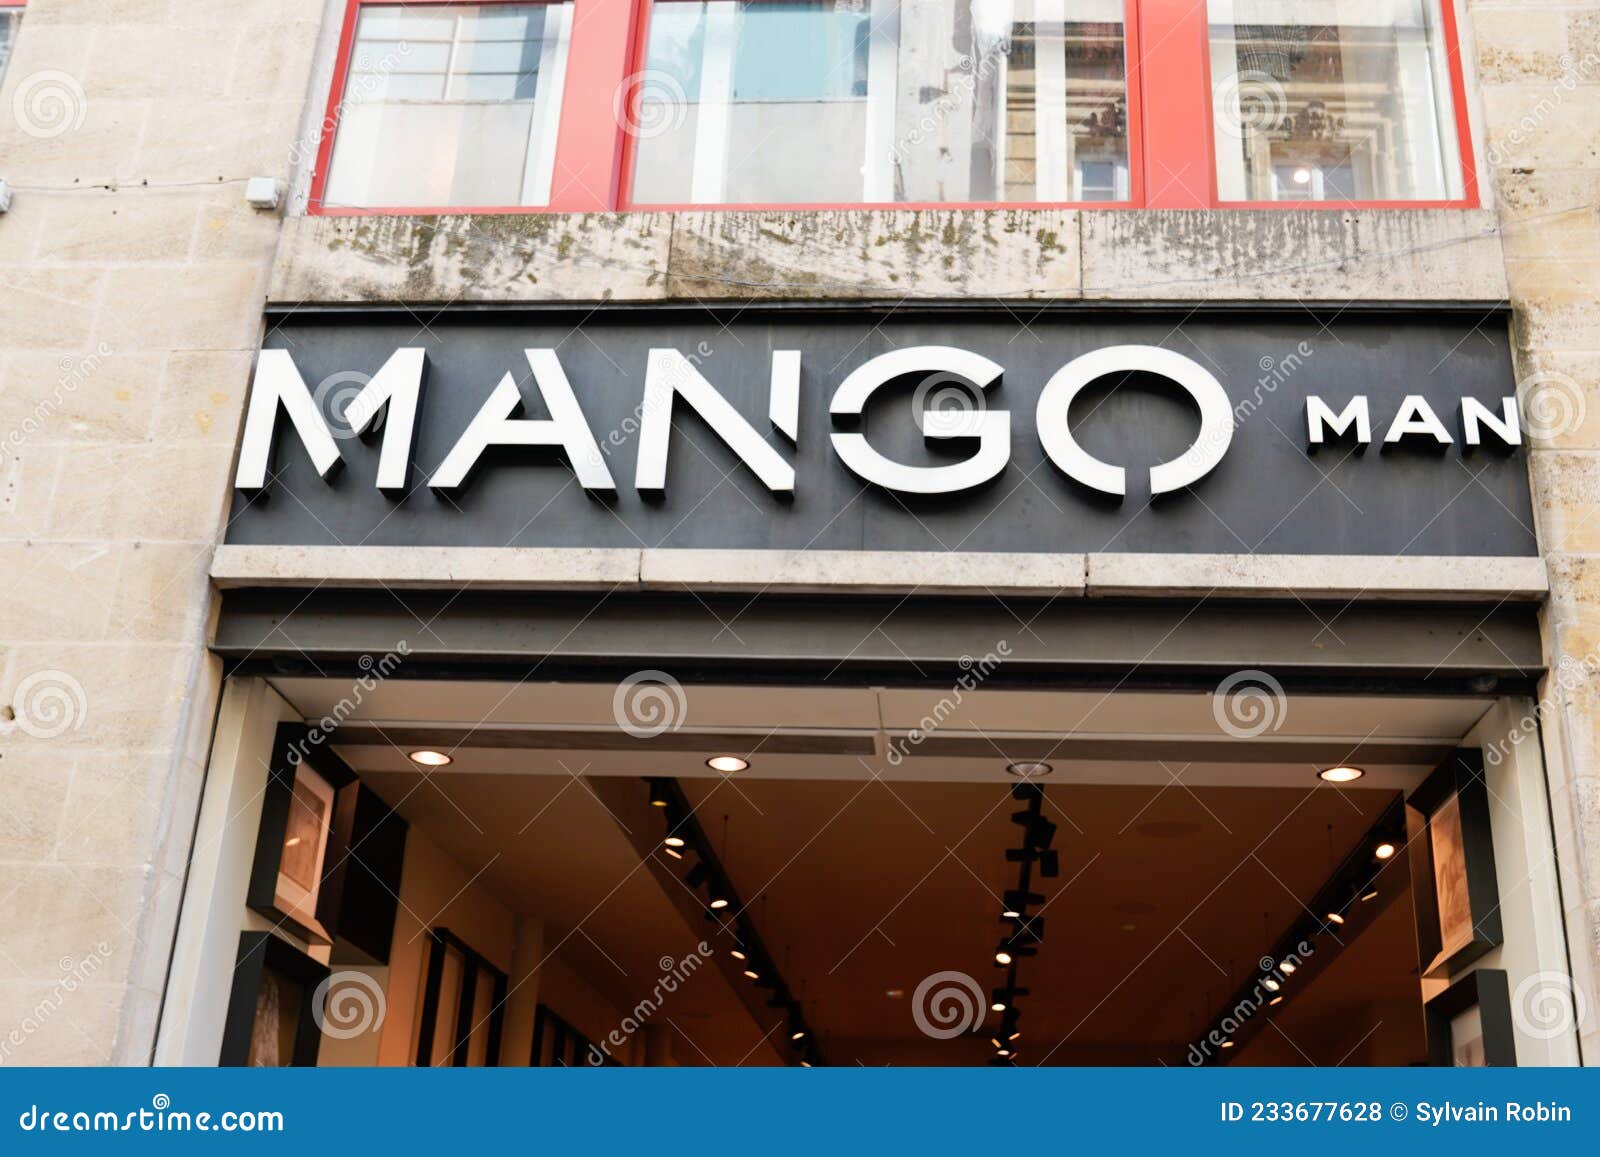 Mango Man Marca De Texto Y Marca De Logotipo Tienda Ropa De Moda De Señas  Delanteras Foto de archivo editorial - Imagen de exterior, minorista:  233677628